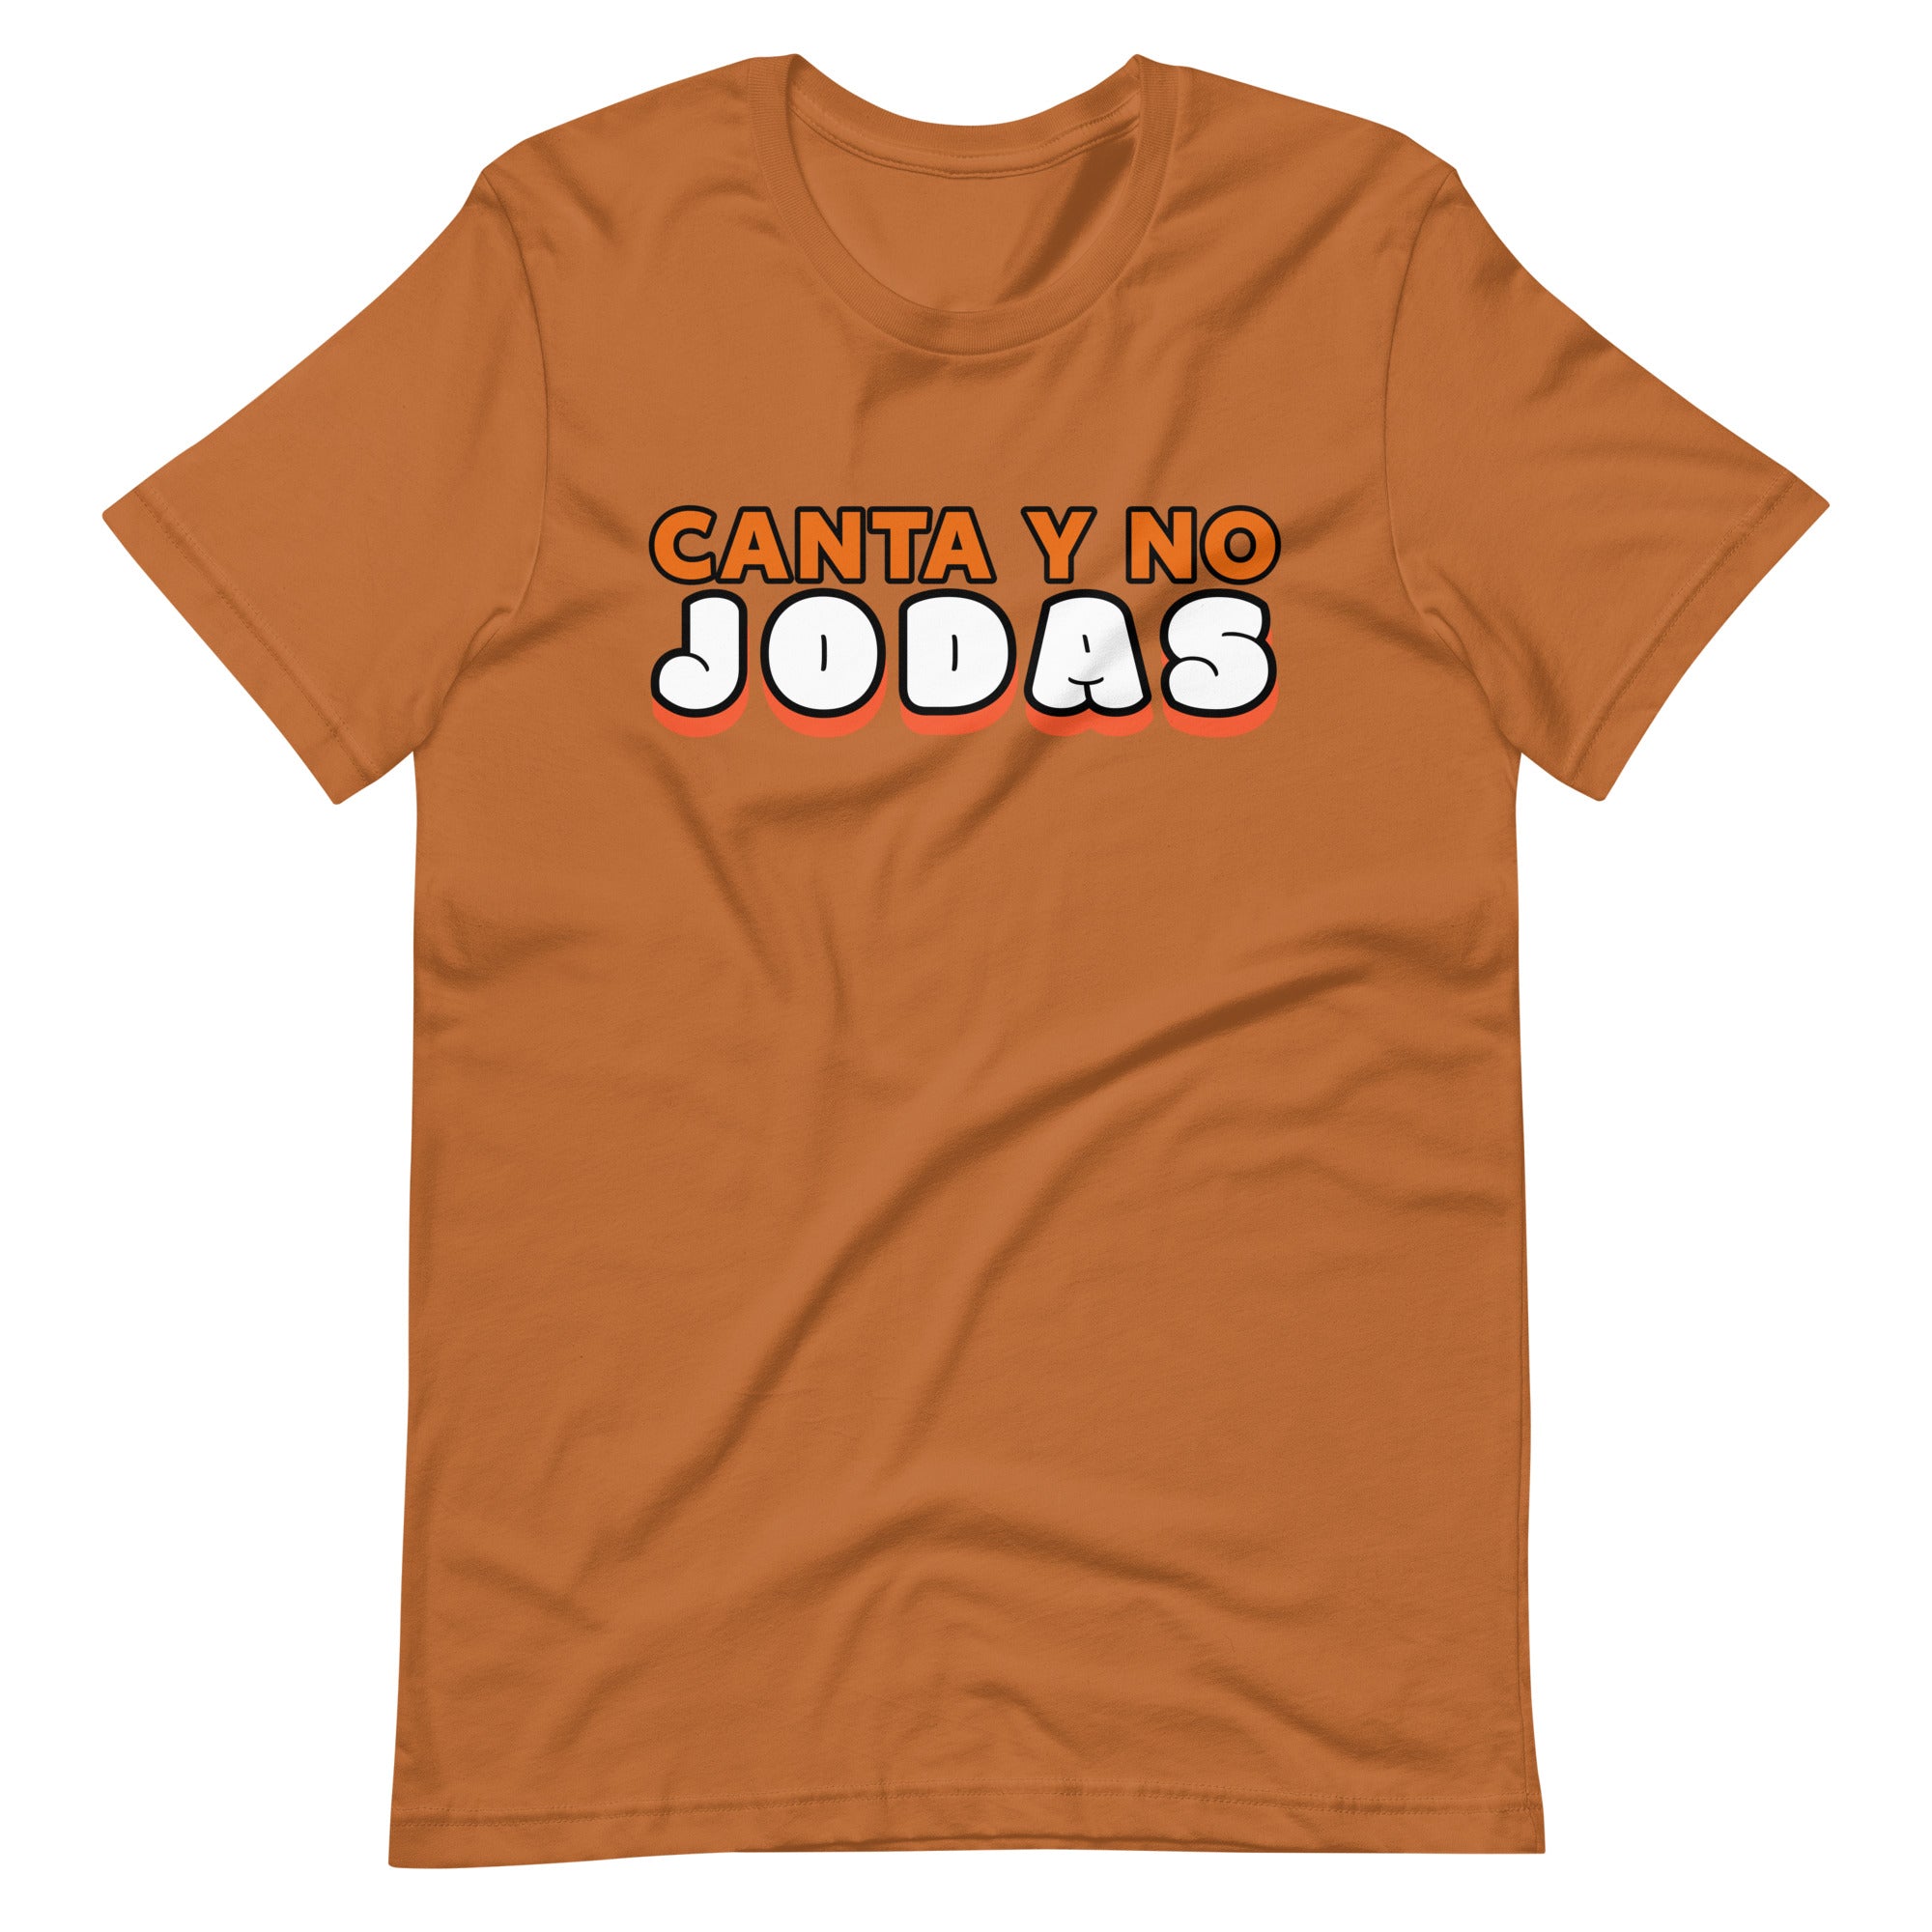 Canta y no jodas | Camiseta de manga corta unisex